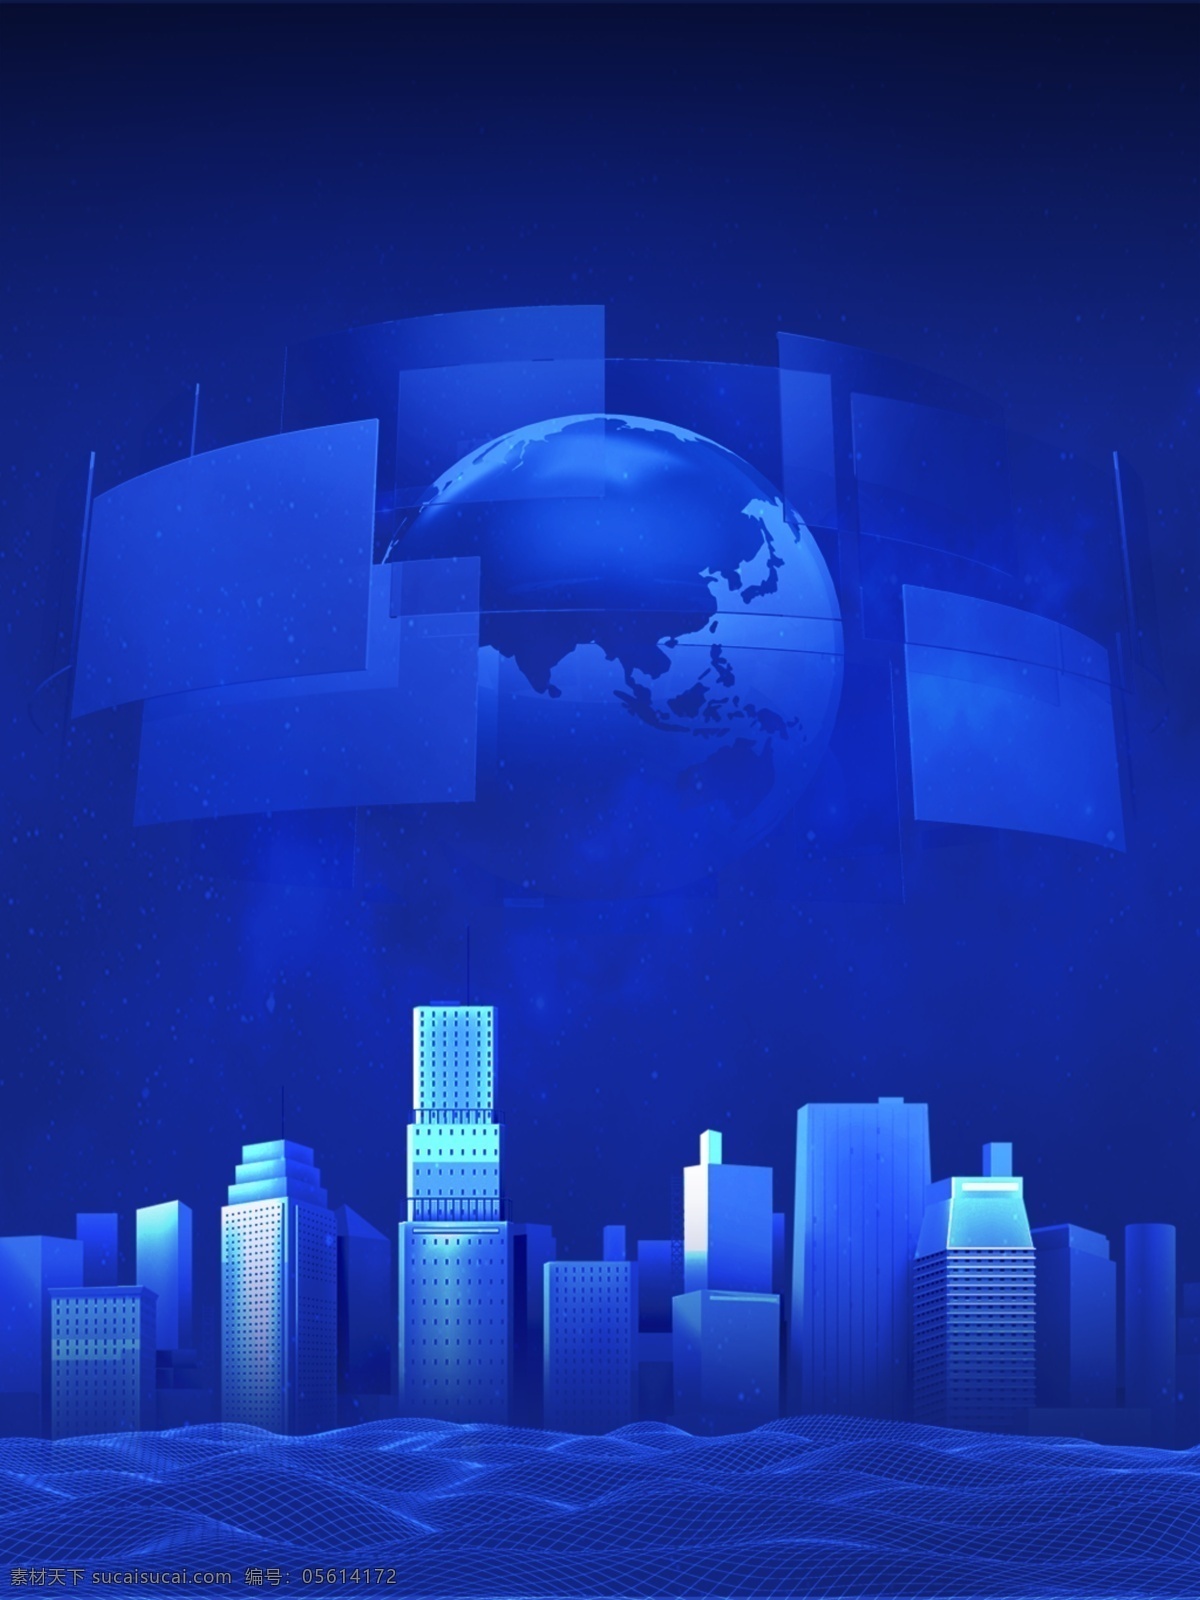 蓝色 科技 城市 背景 蓝色科技 科技城市 数码 未来 数据 科技背景 星球背景